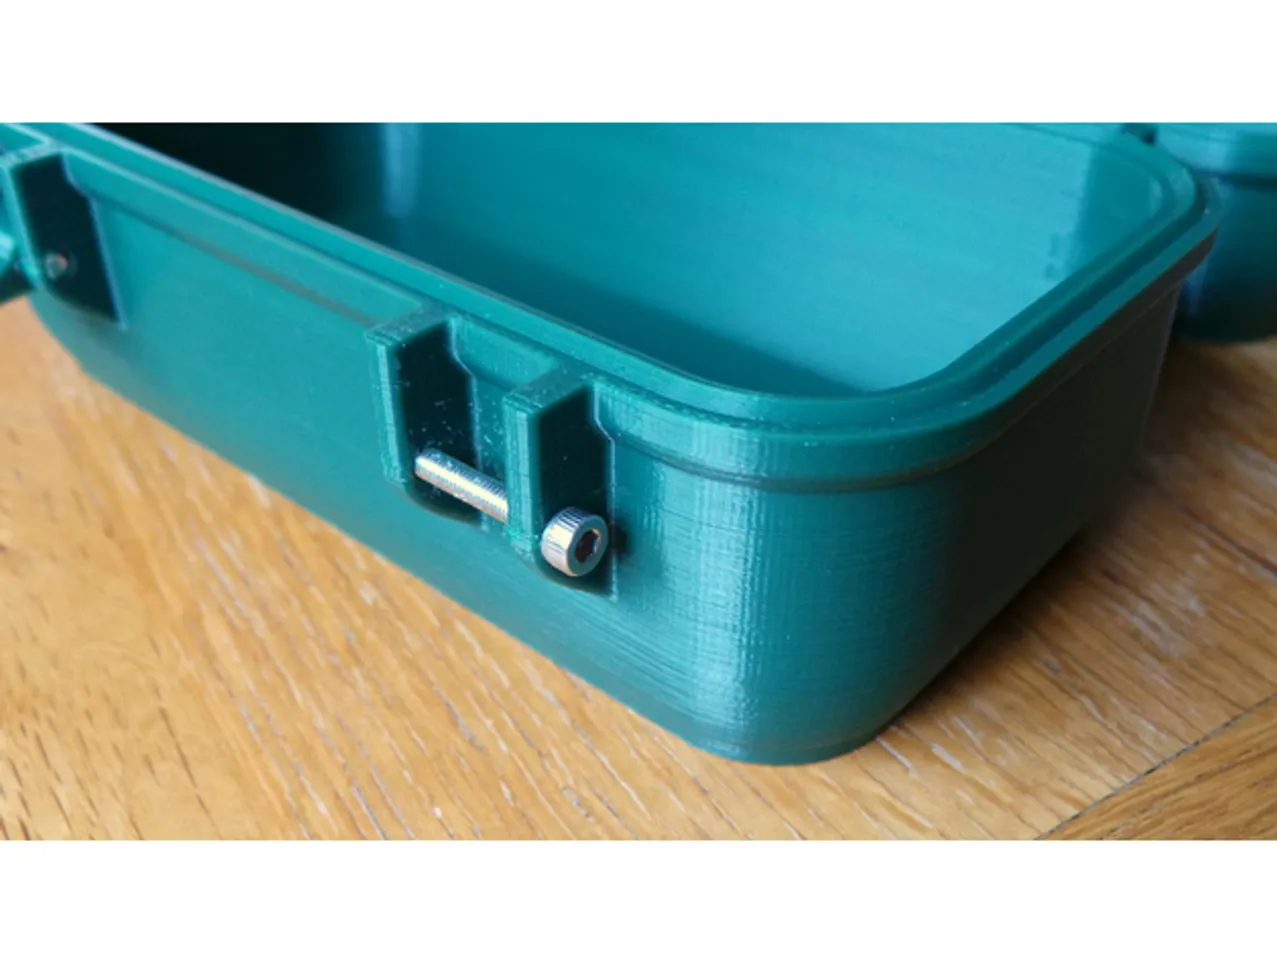 zx82net Customizable Rugged Waterproof Box by zx82net | Download 